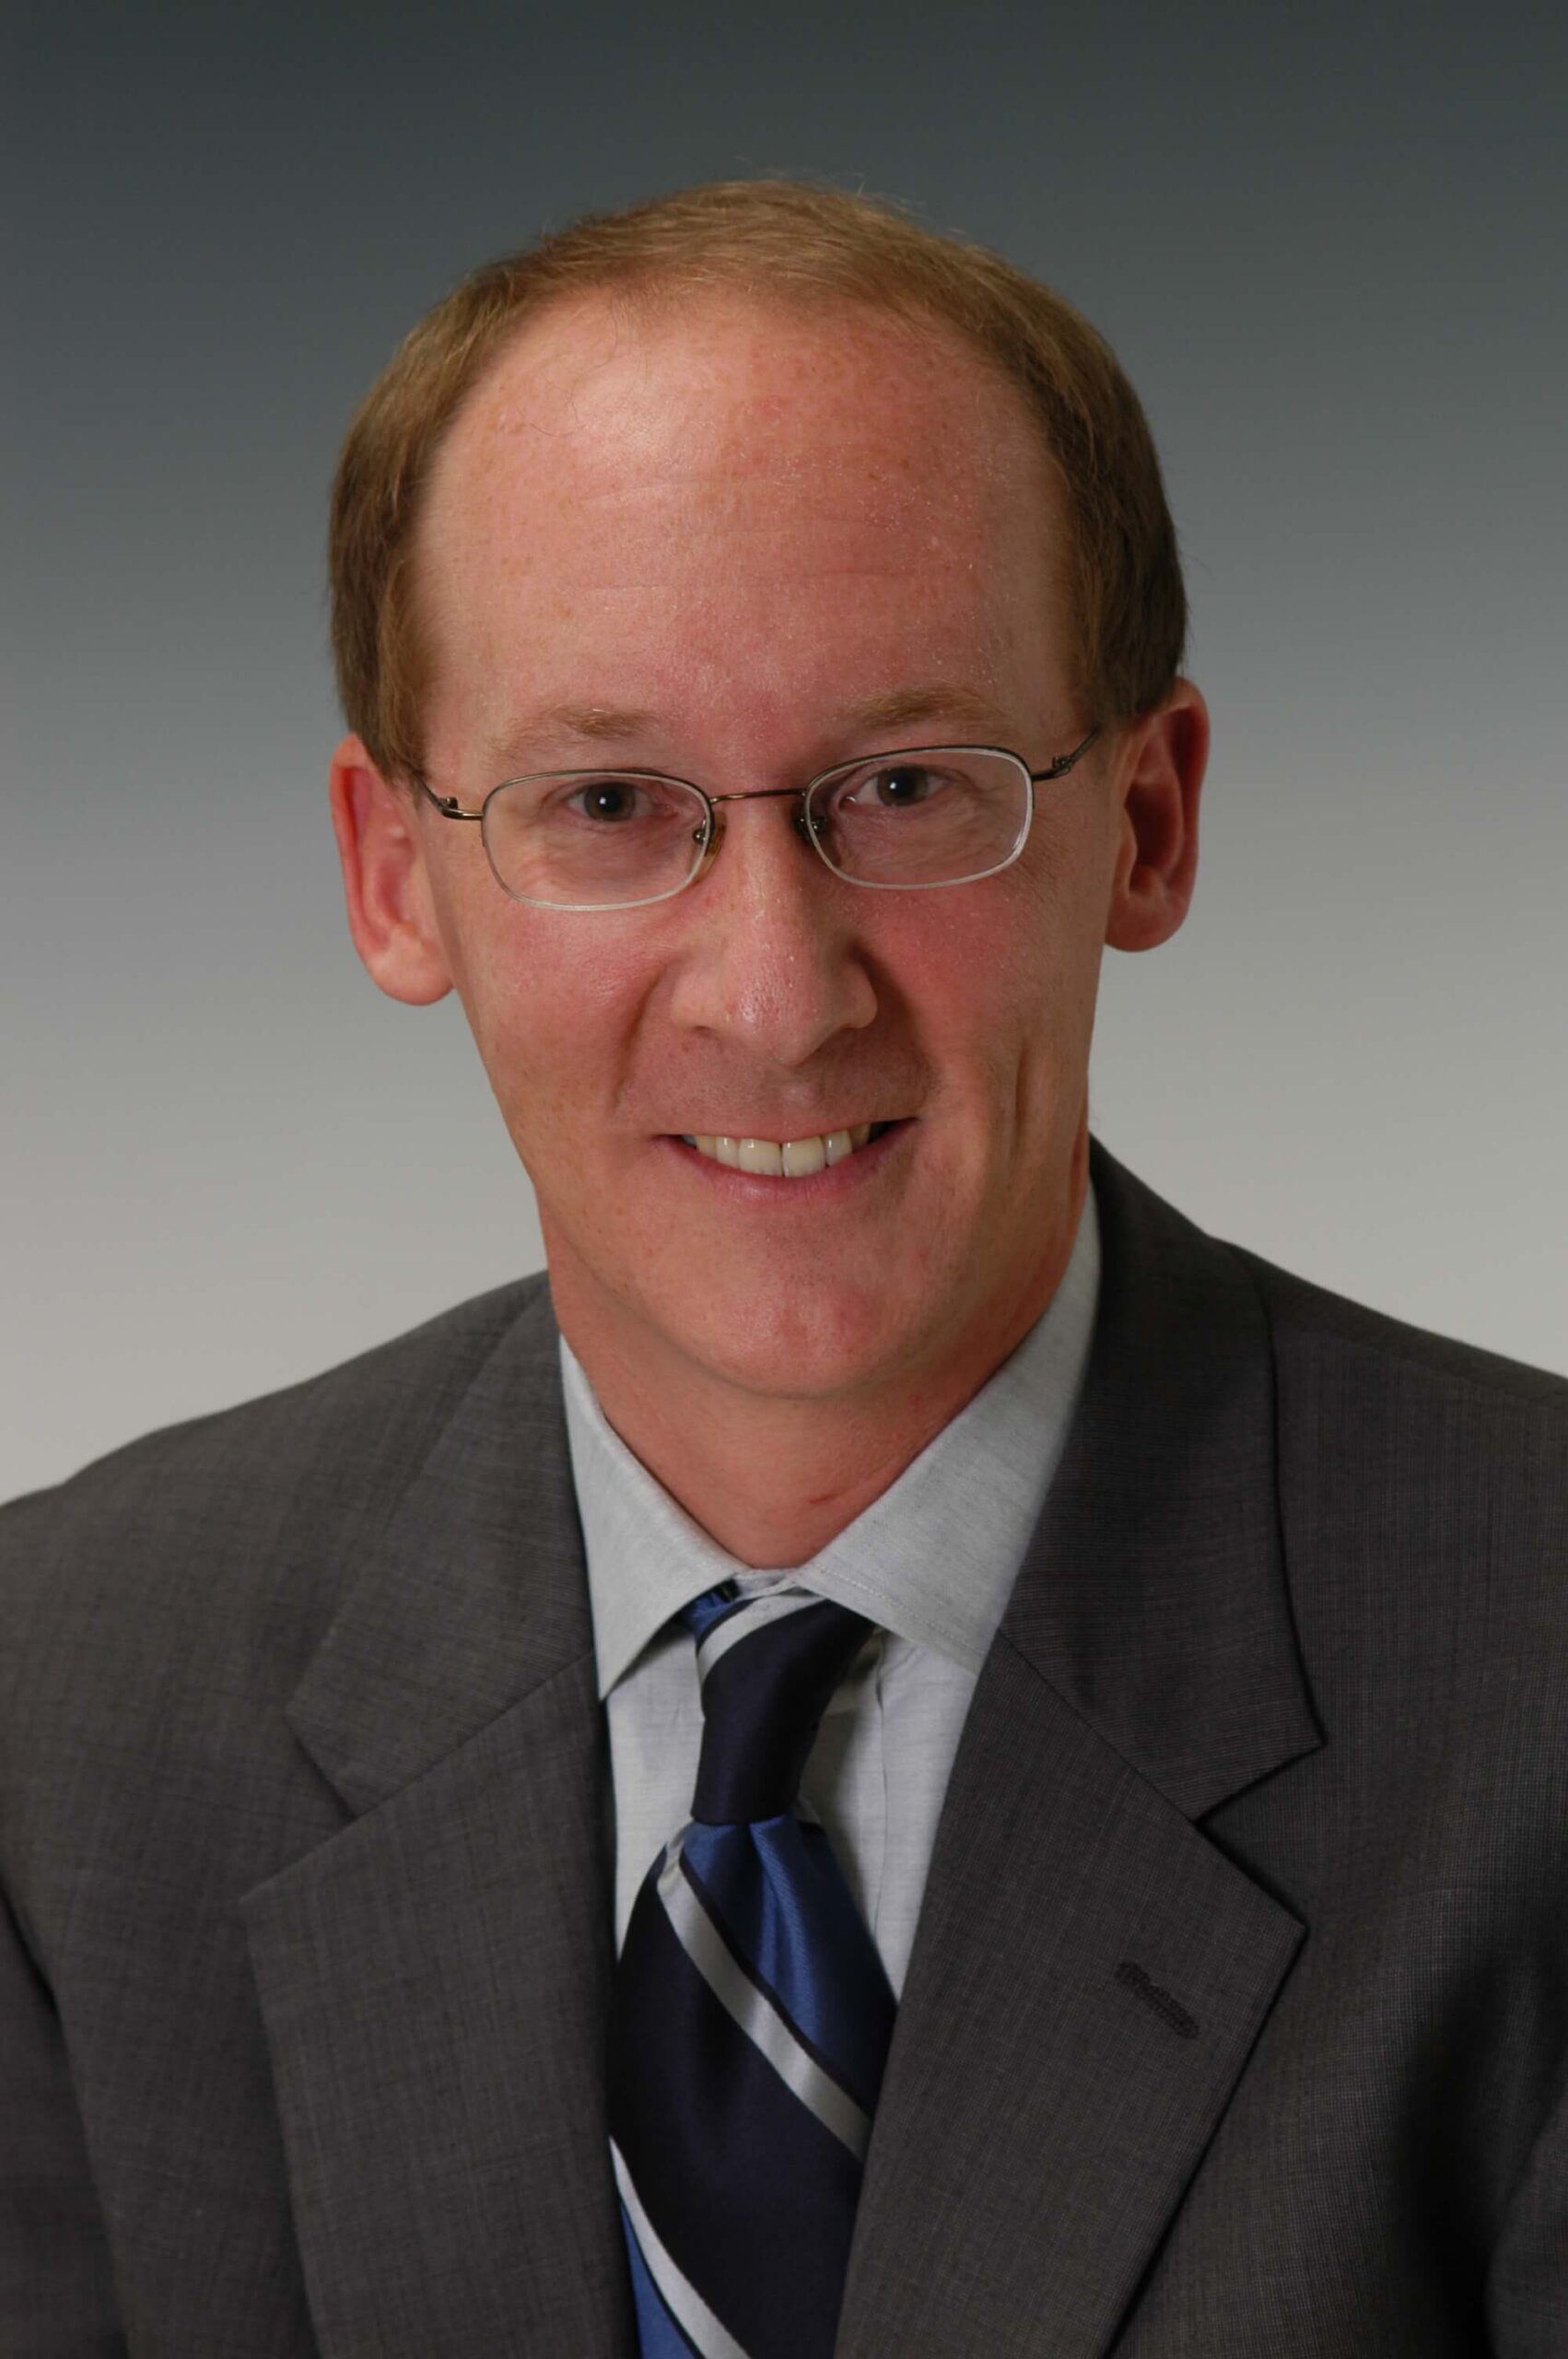 Greg Moody, Director of Ohios Office of Health Transformation